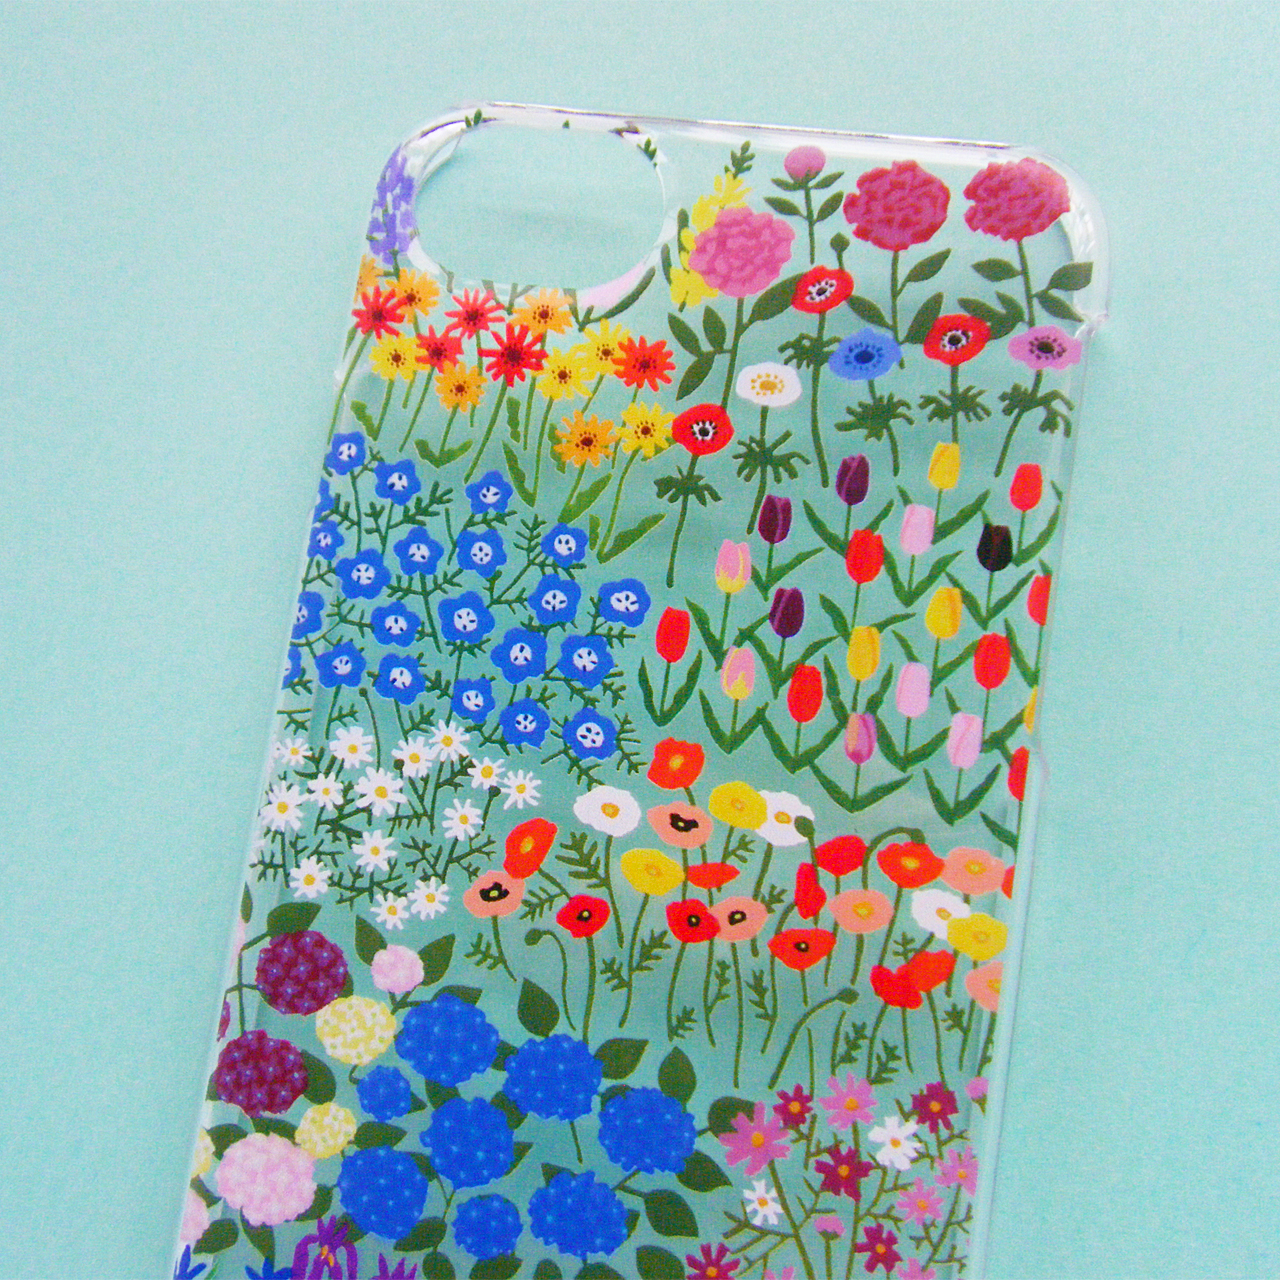 新作「すべてのお花畑に iPhoneケース」をアップしました。